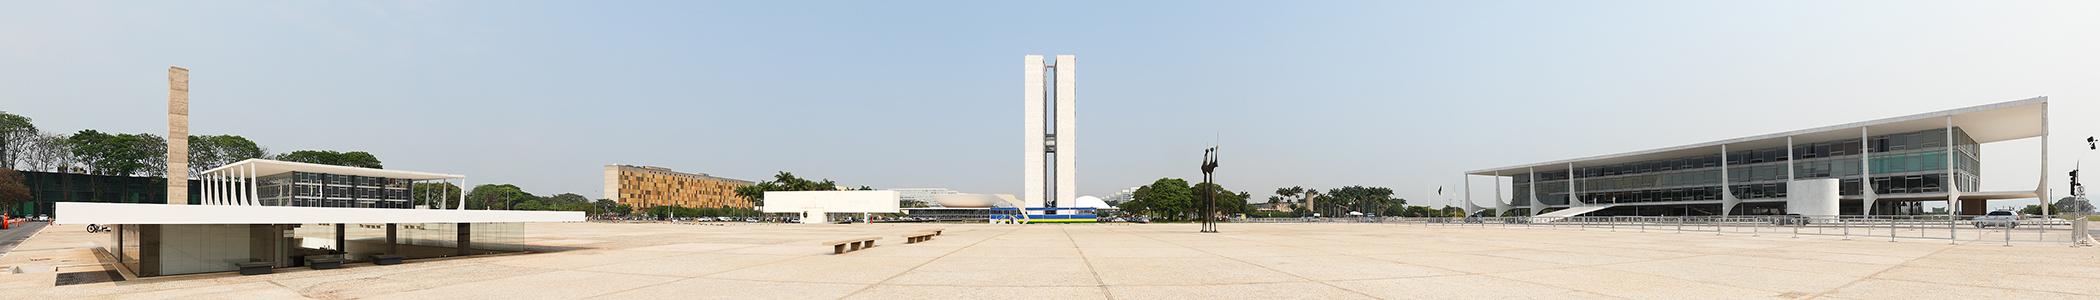 Banner image for Brasília on GigsGuide